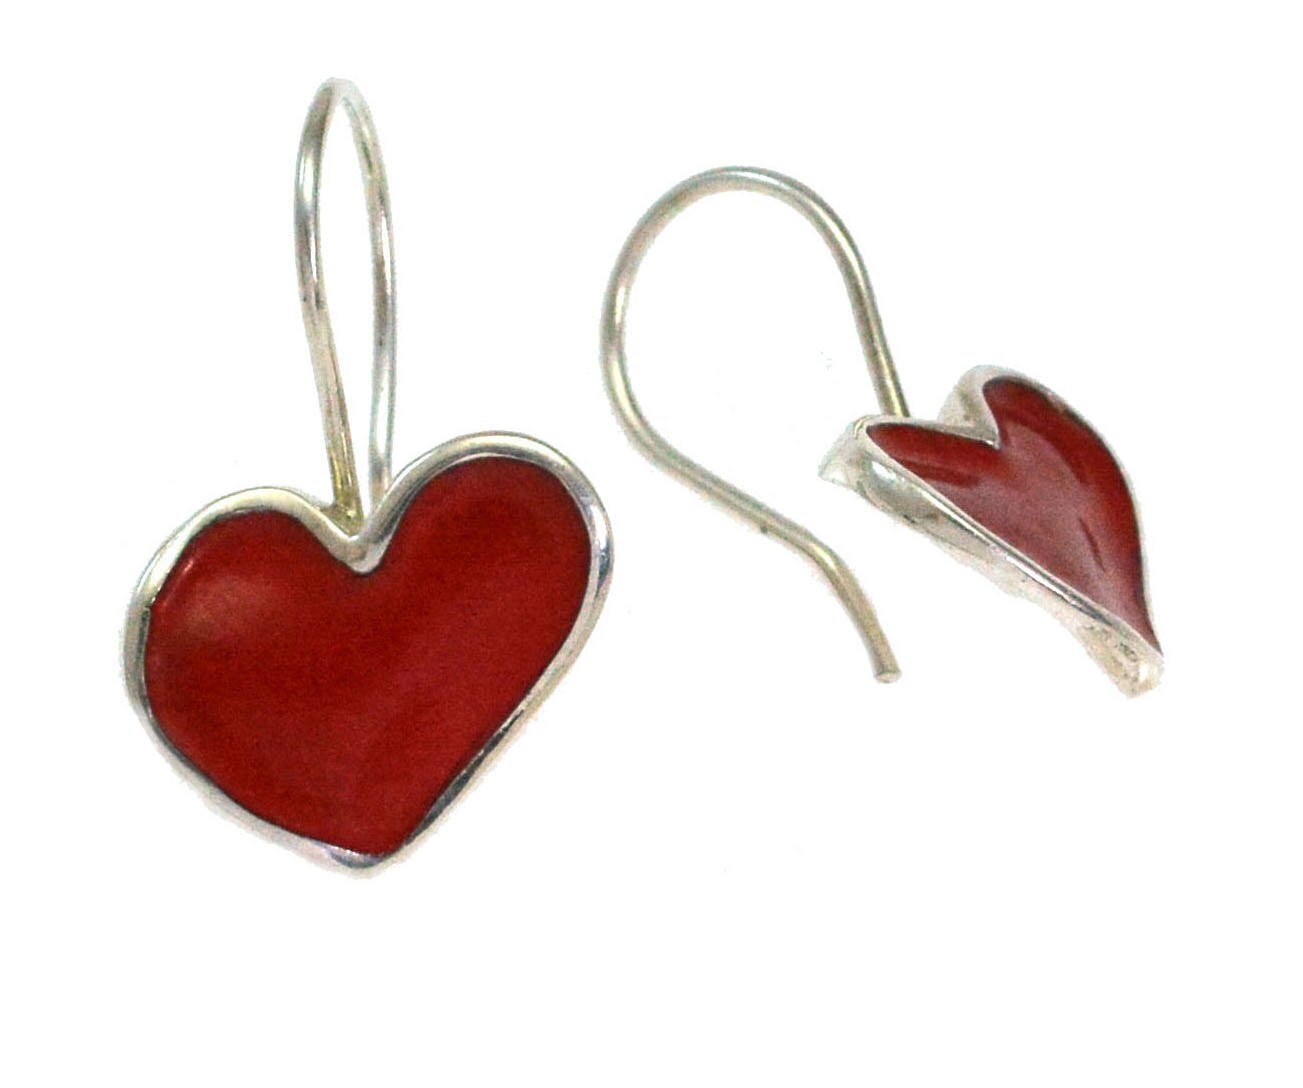 Red Heart Shaped Earrings Dangle Heart Earrings Red Enamel | Etsy